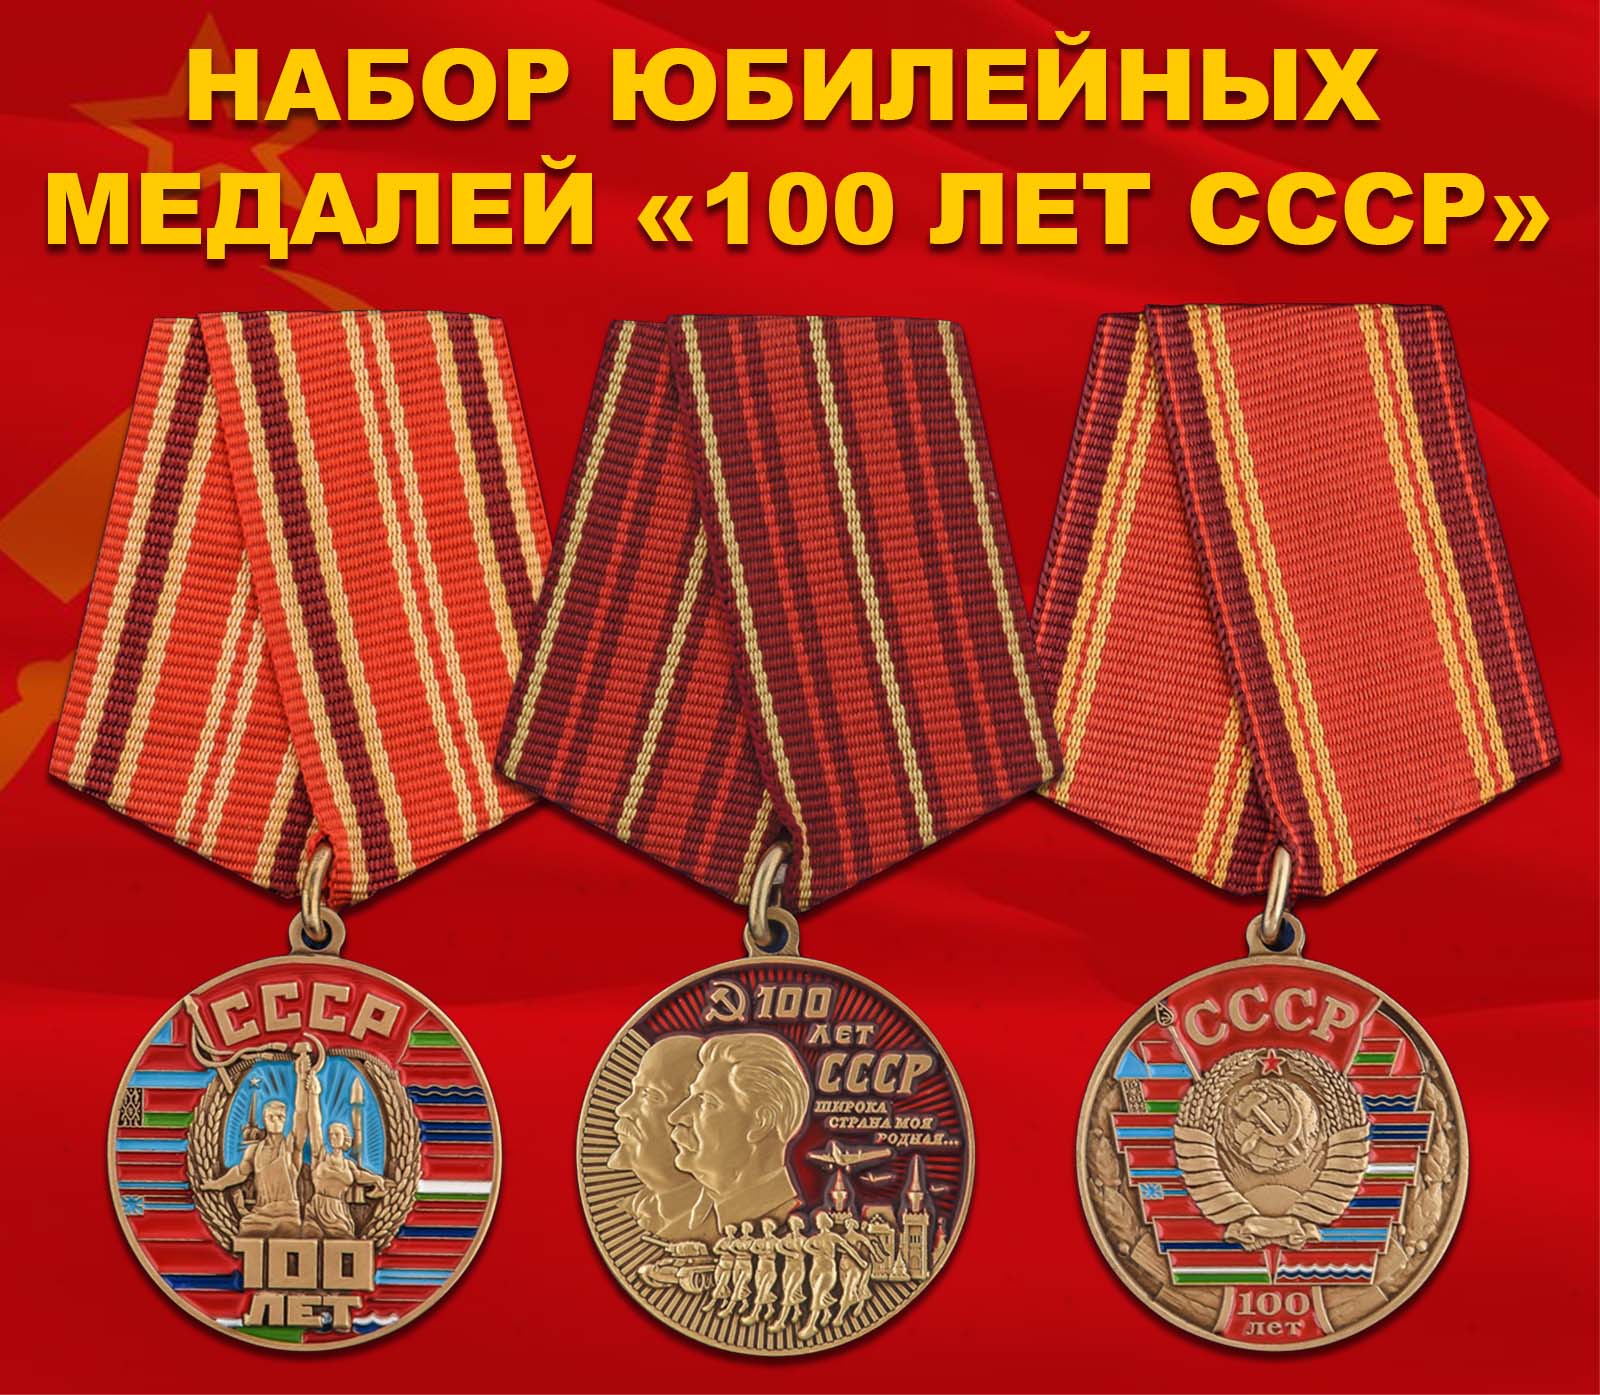 Купить набор юбилейных медалей "100 лет СССР"